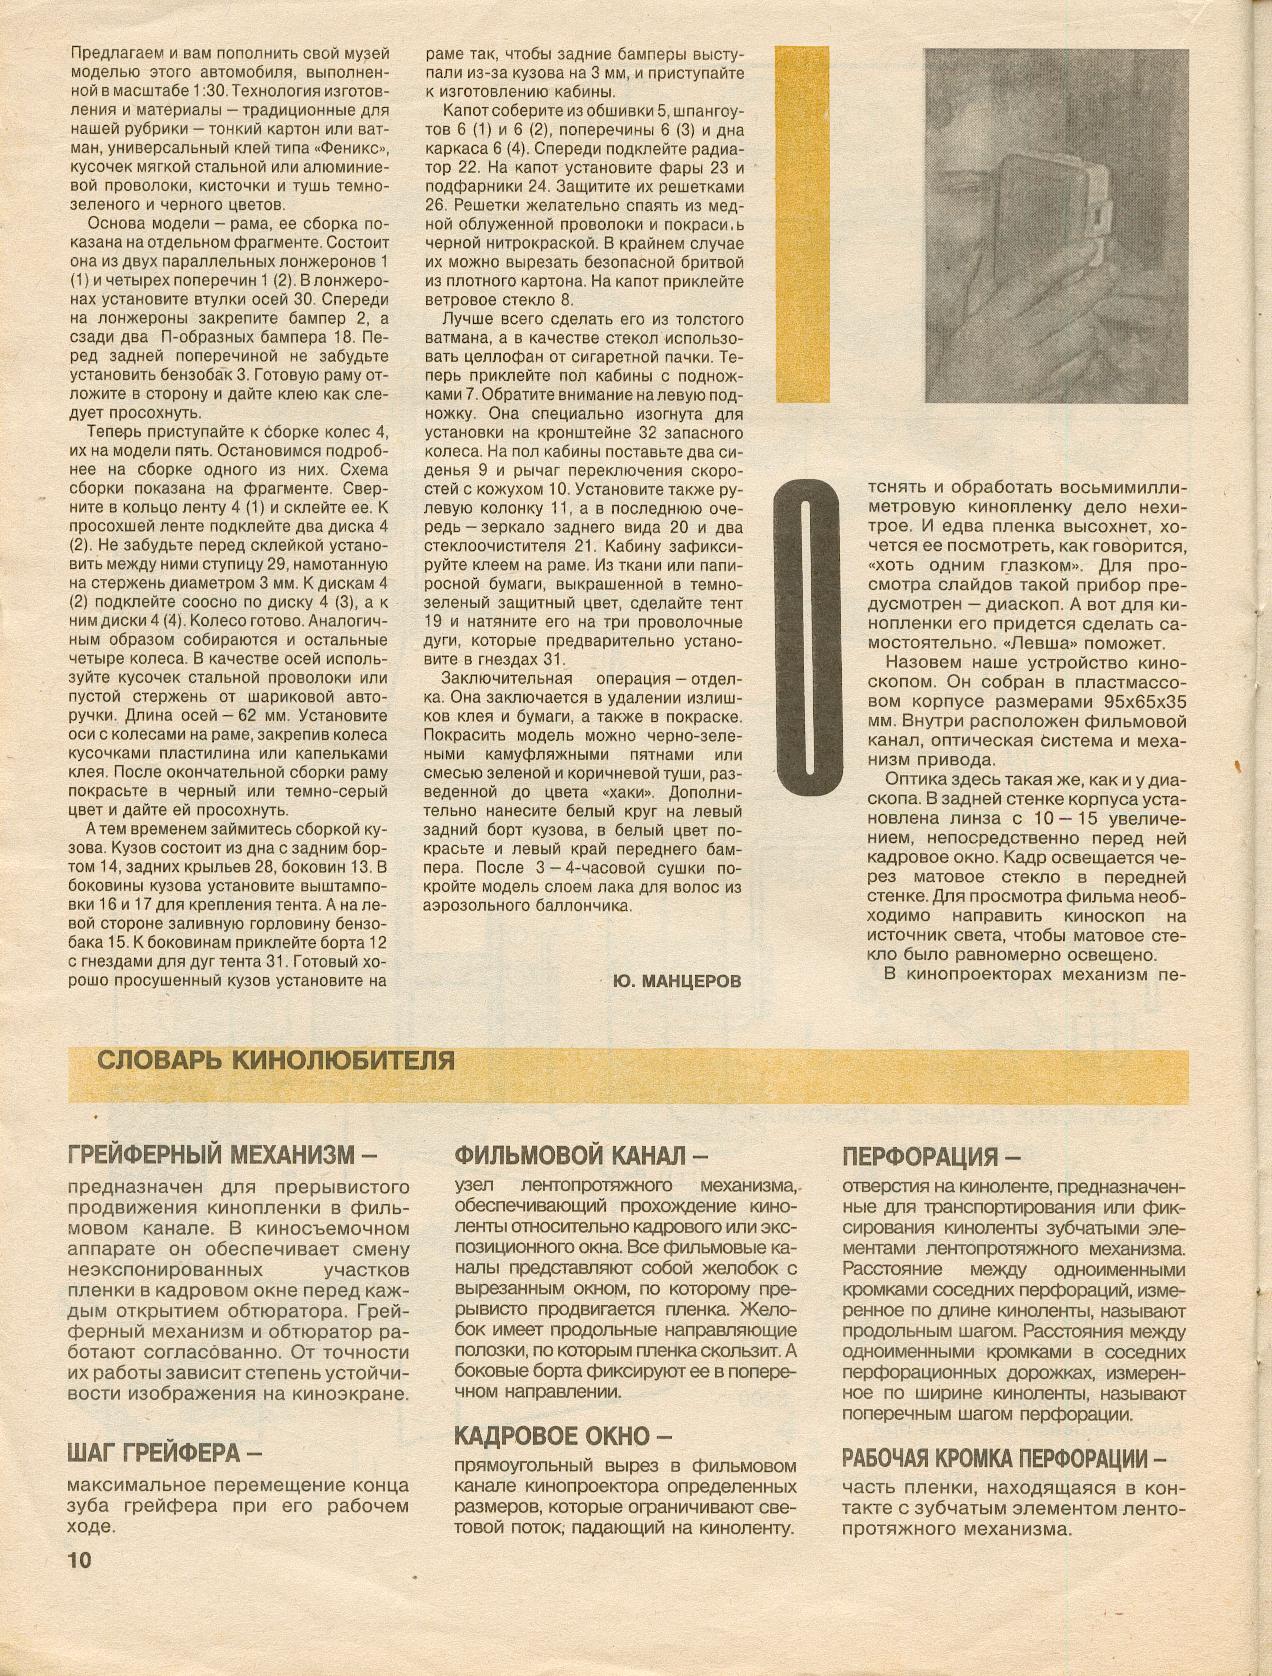 "Левша" 11-12, 1993, 10 c.